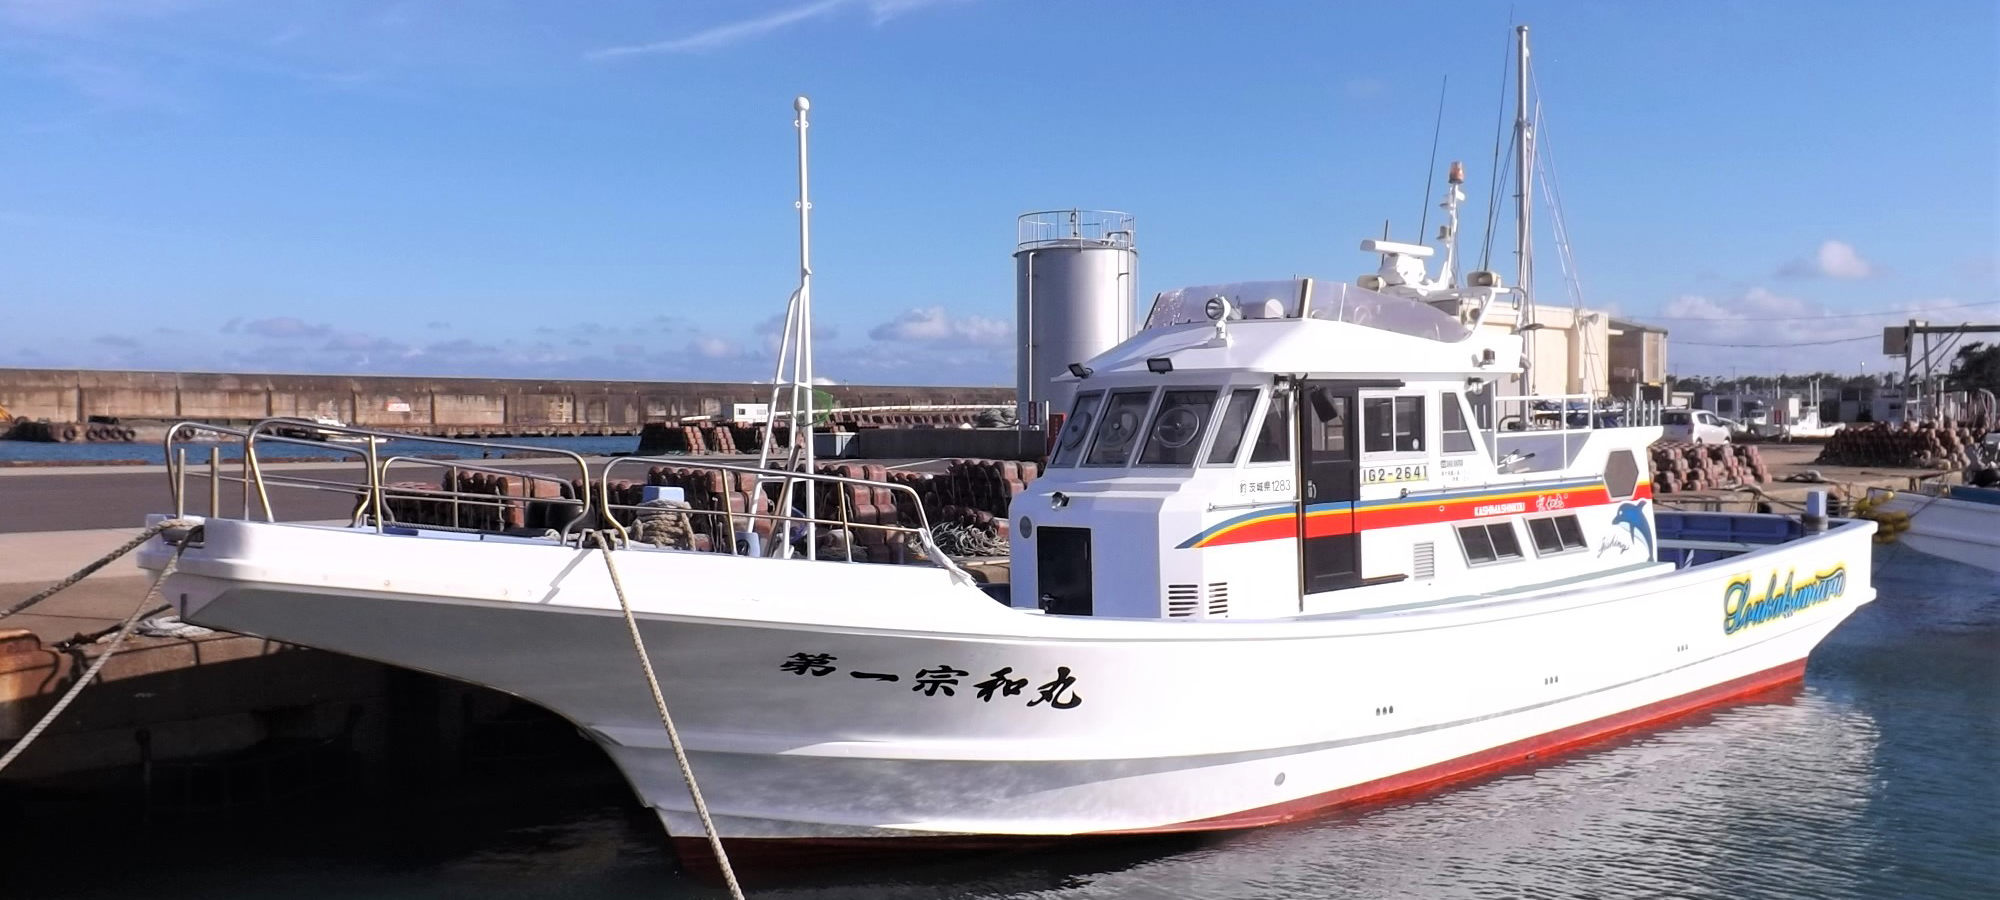 宗和丸 公式サイト 鹿嶋市平井鹿嶋新港の釣り船